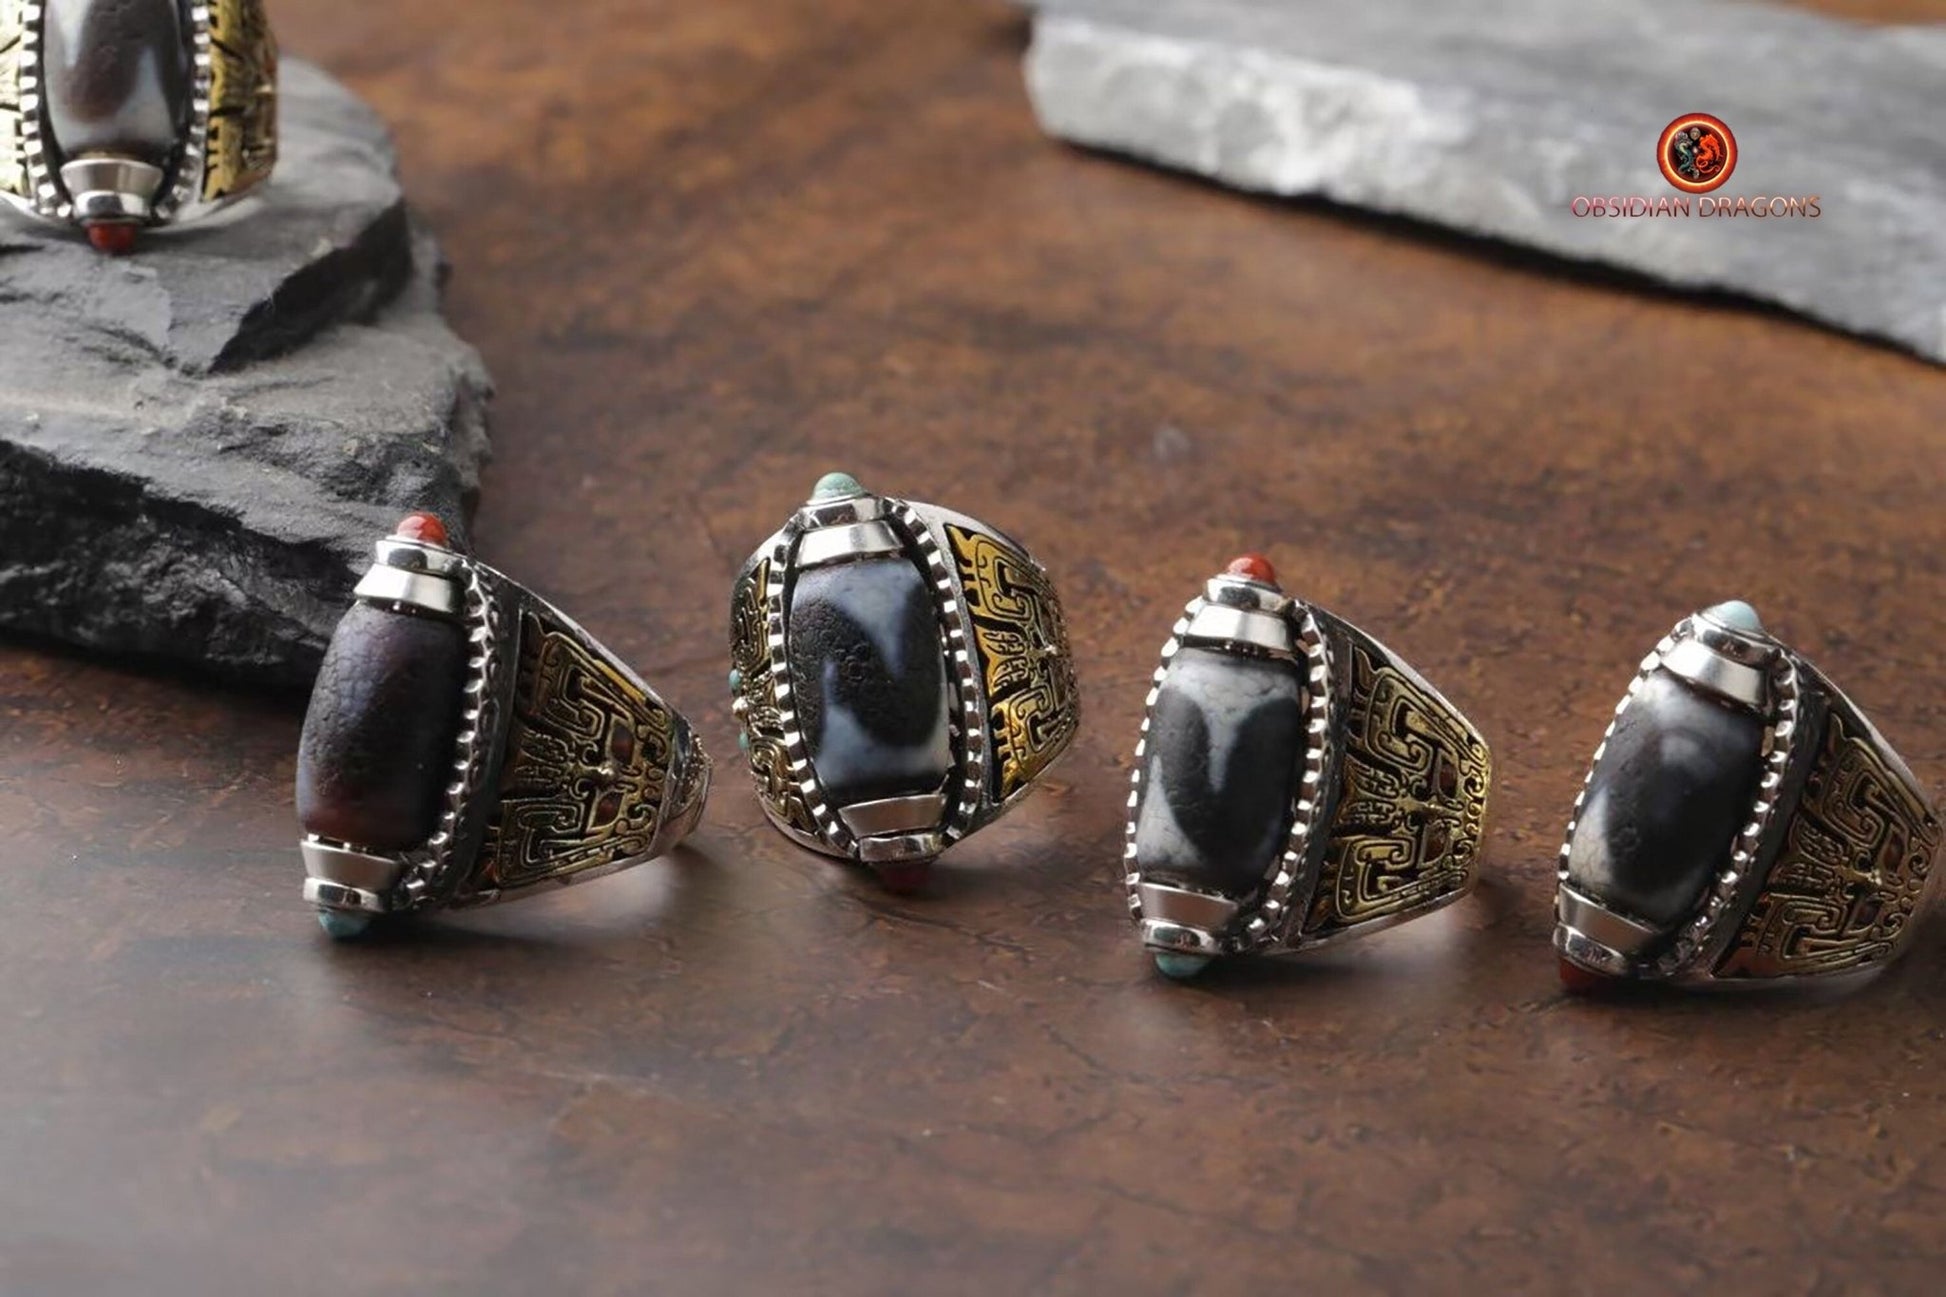 Bague DZI- Dents de tigre- Bague de protection tibétaine | obsidian dragons